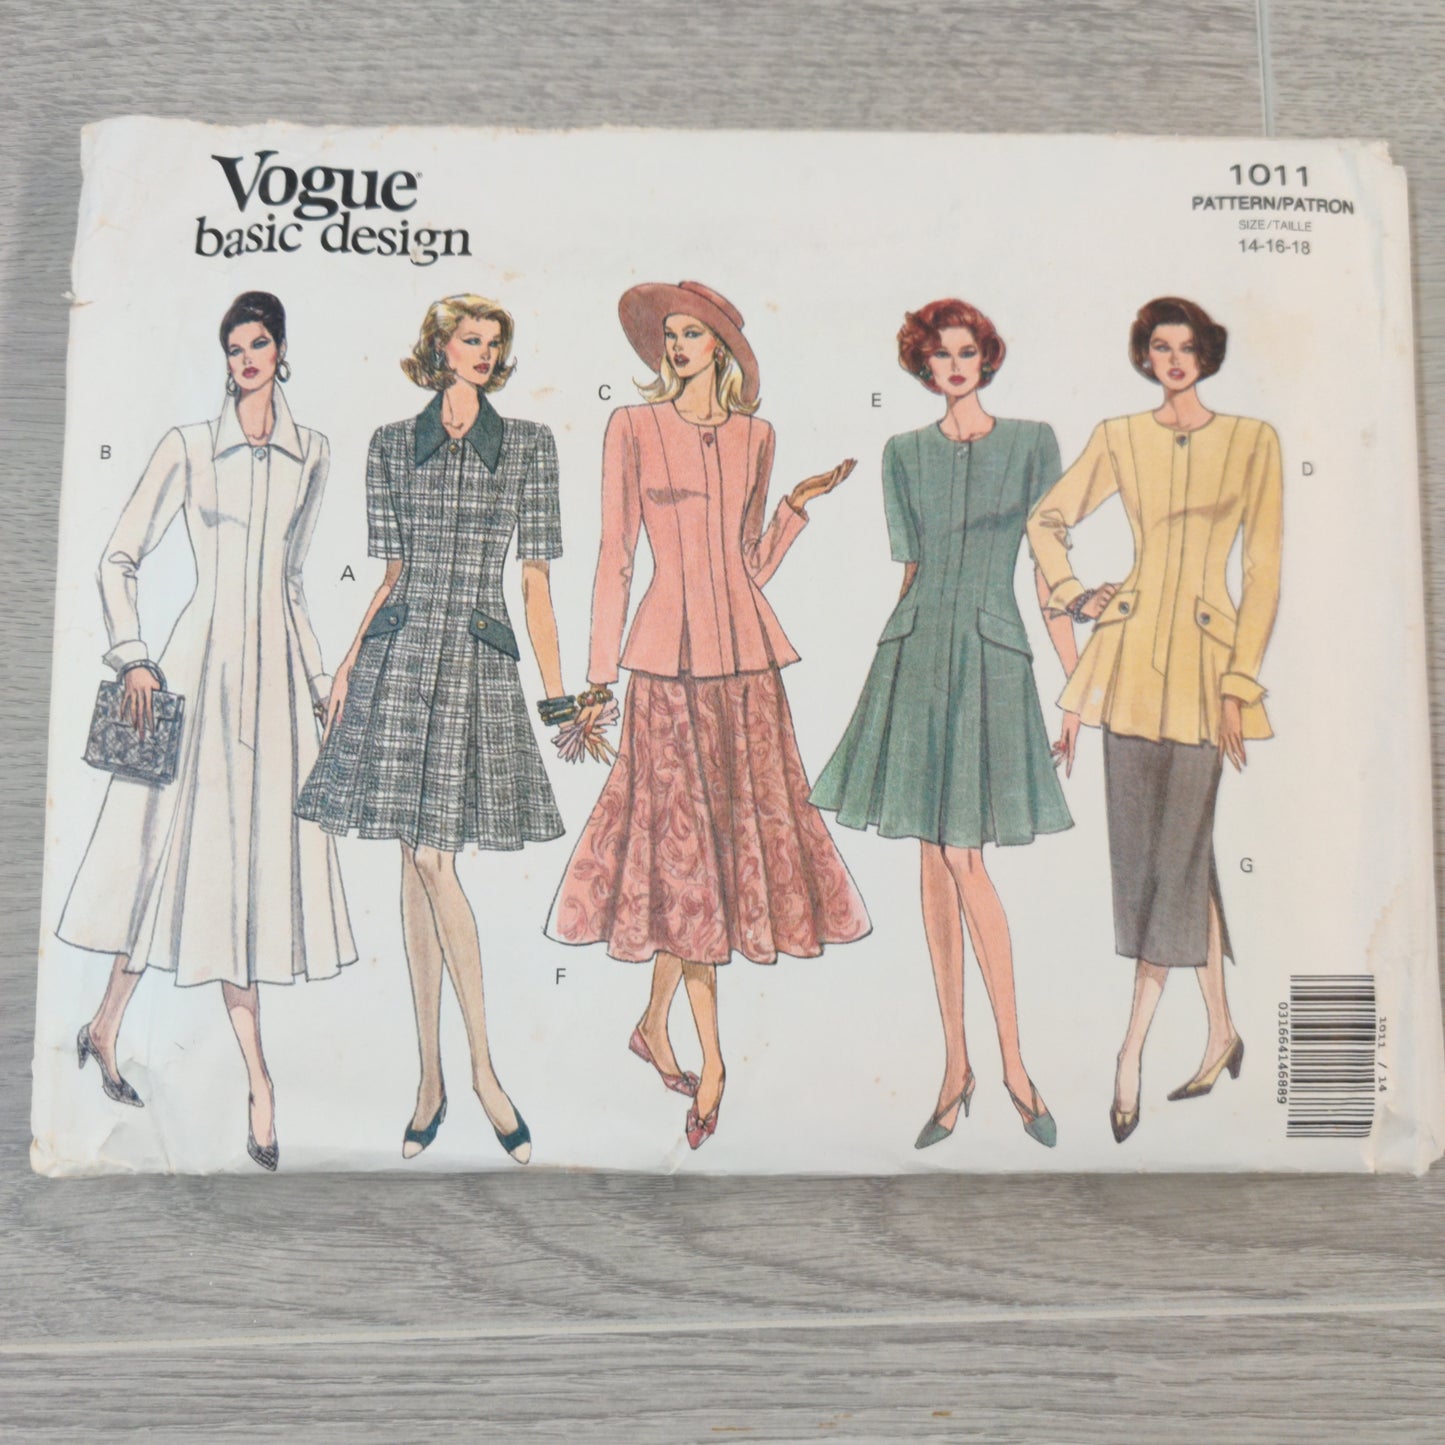 Vogue 1011 Size 14-16-18